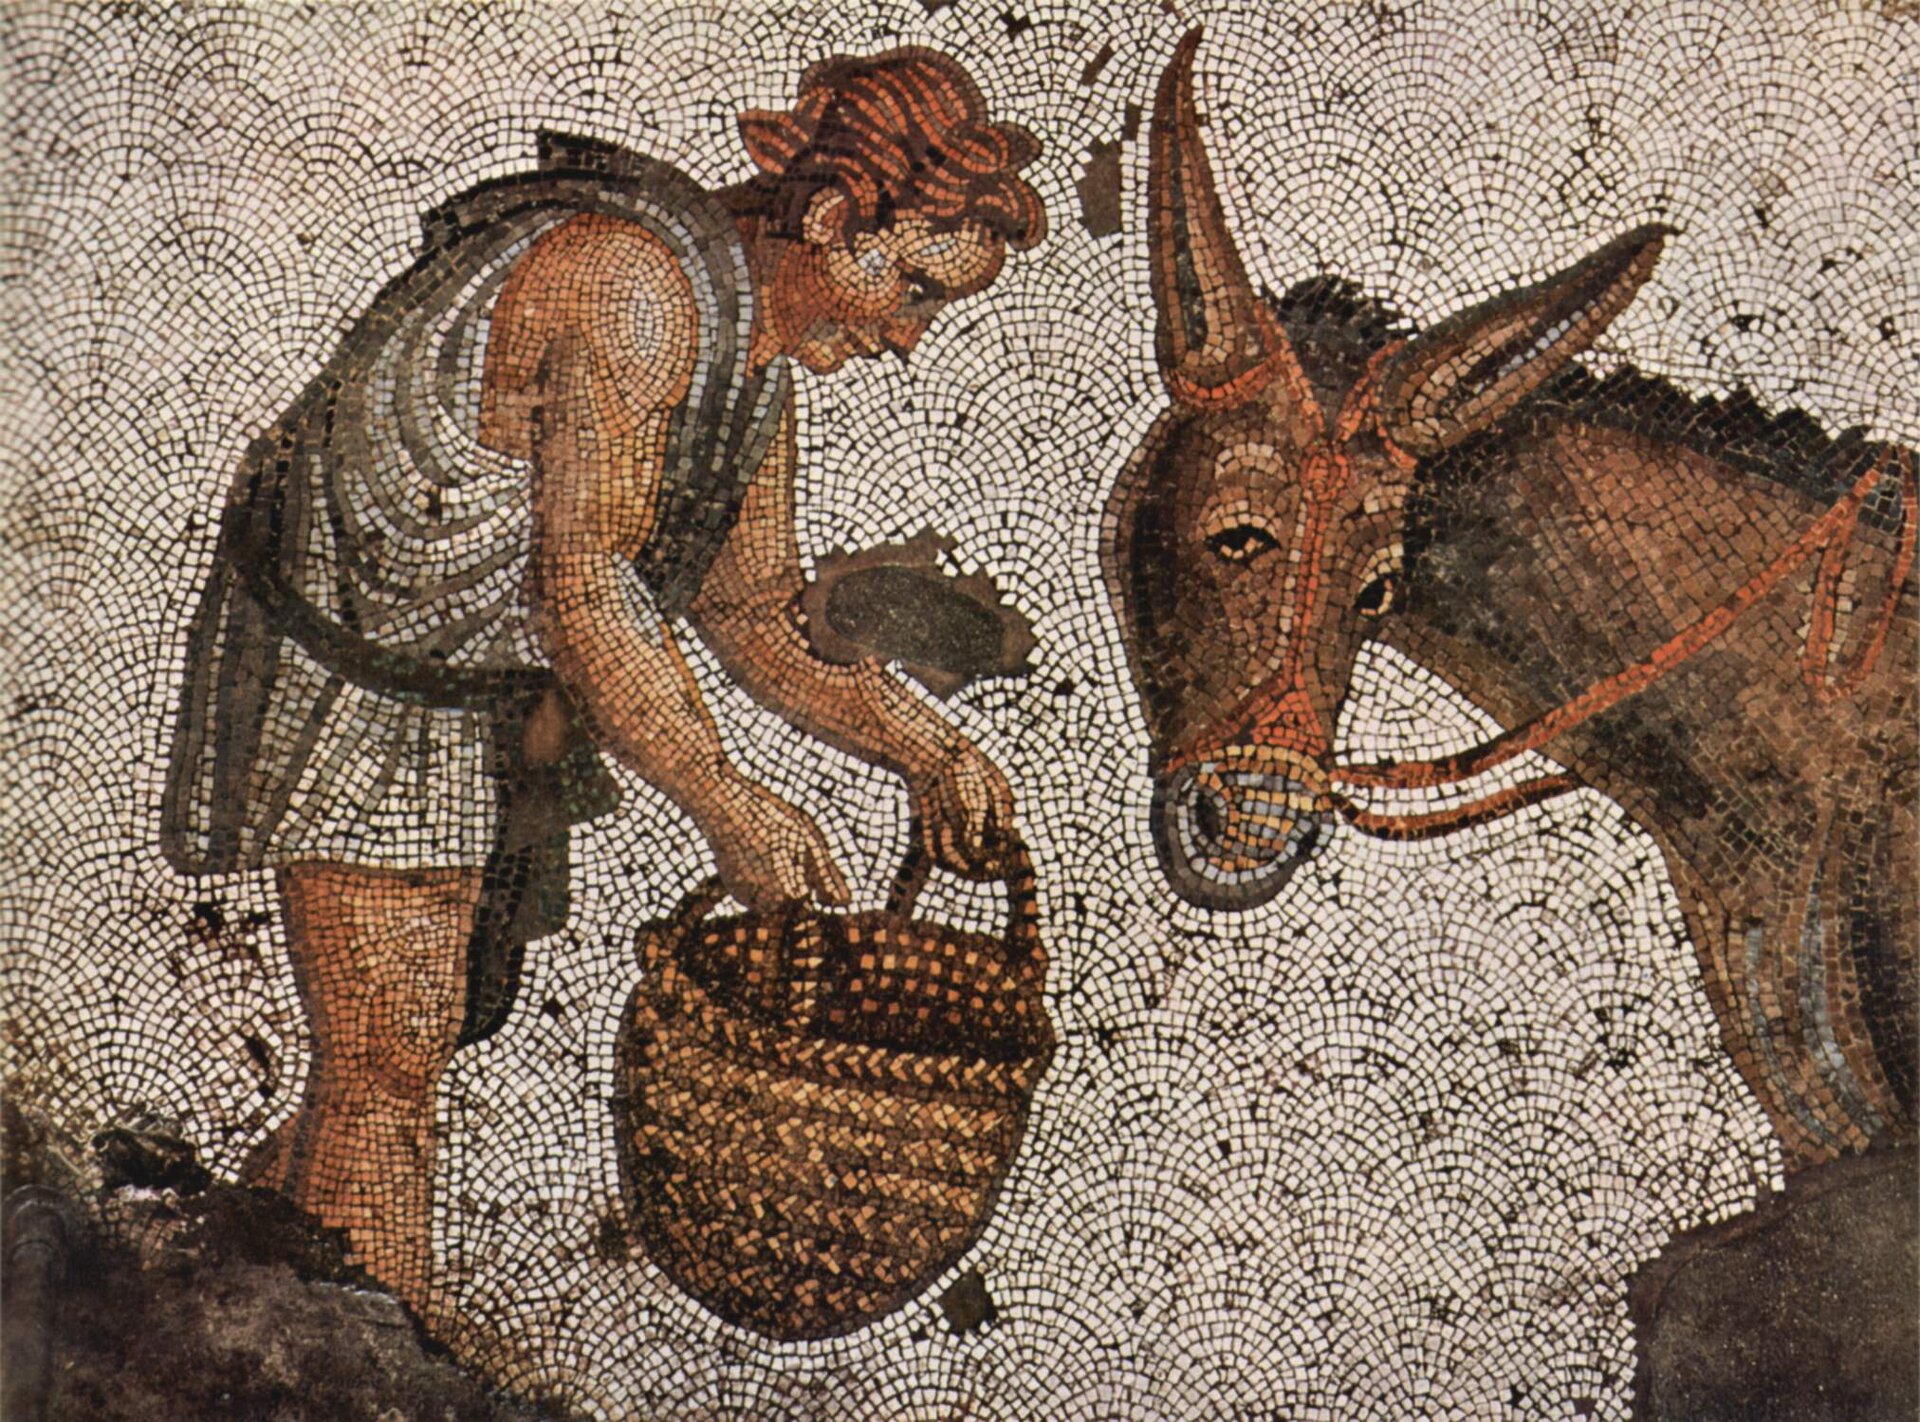 Zdjęcie mozaiki, na której widoczny jest mężczyzna z koszem w rękach. Mężczyzna nachyla się w kierunku osła, próbując go nakarmić.